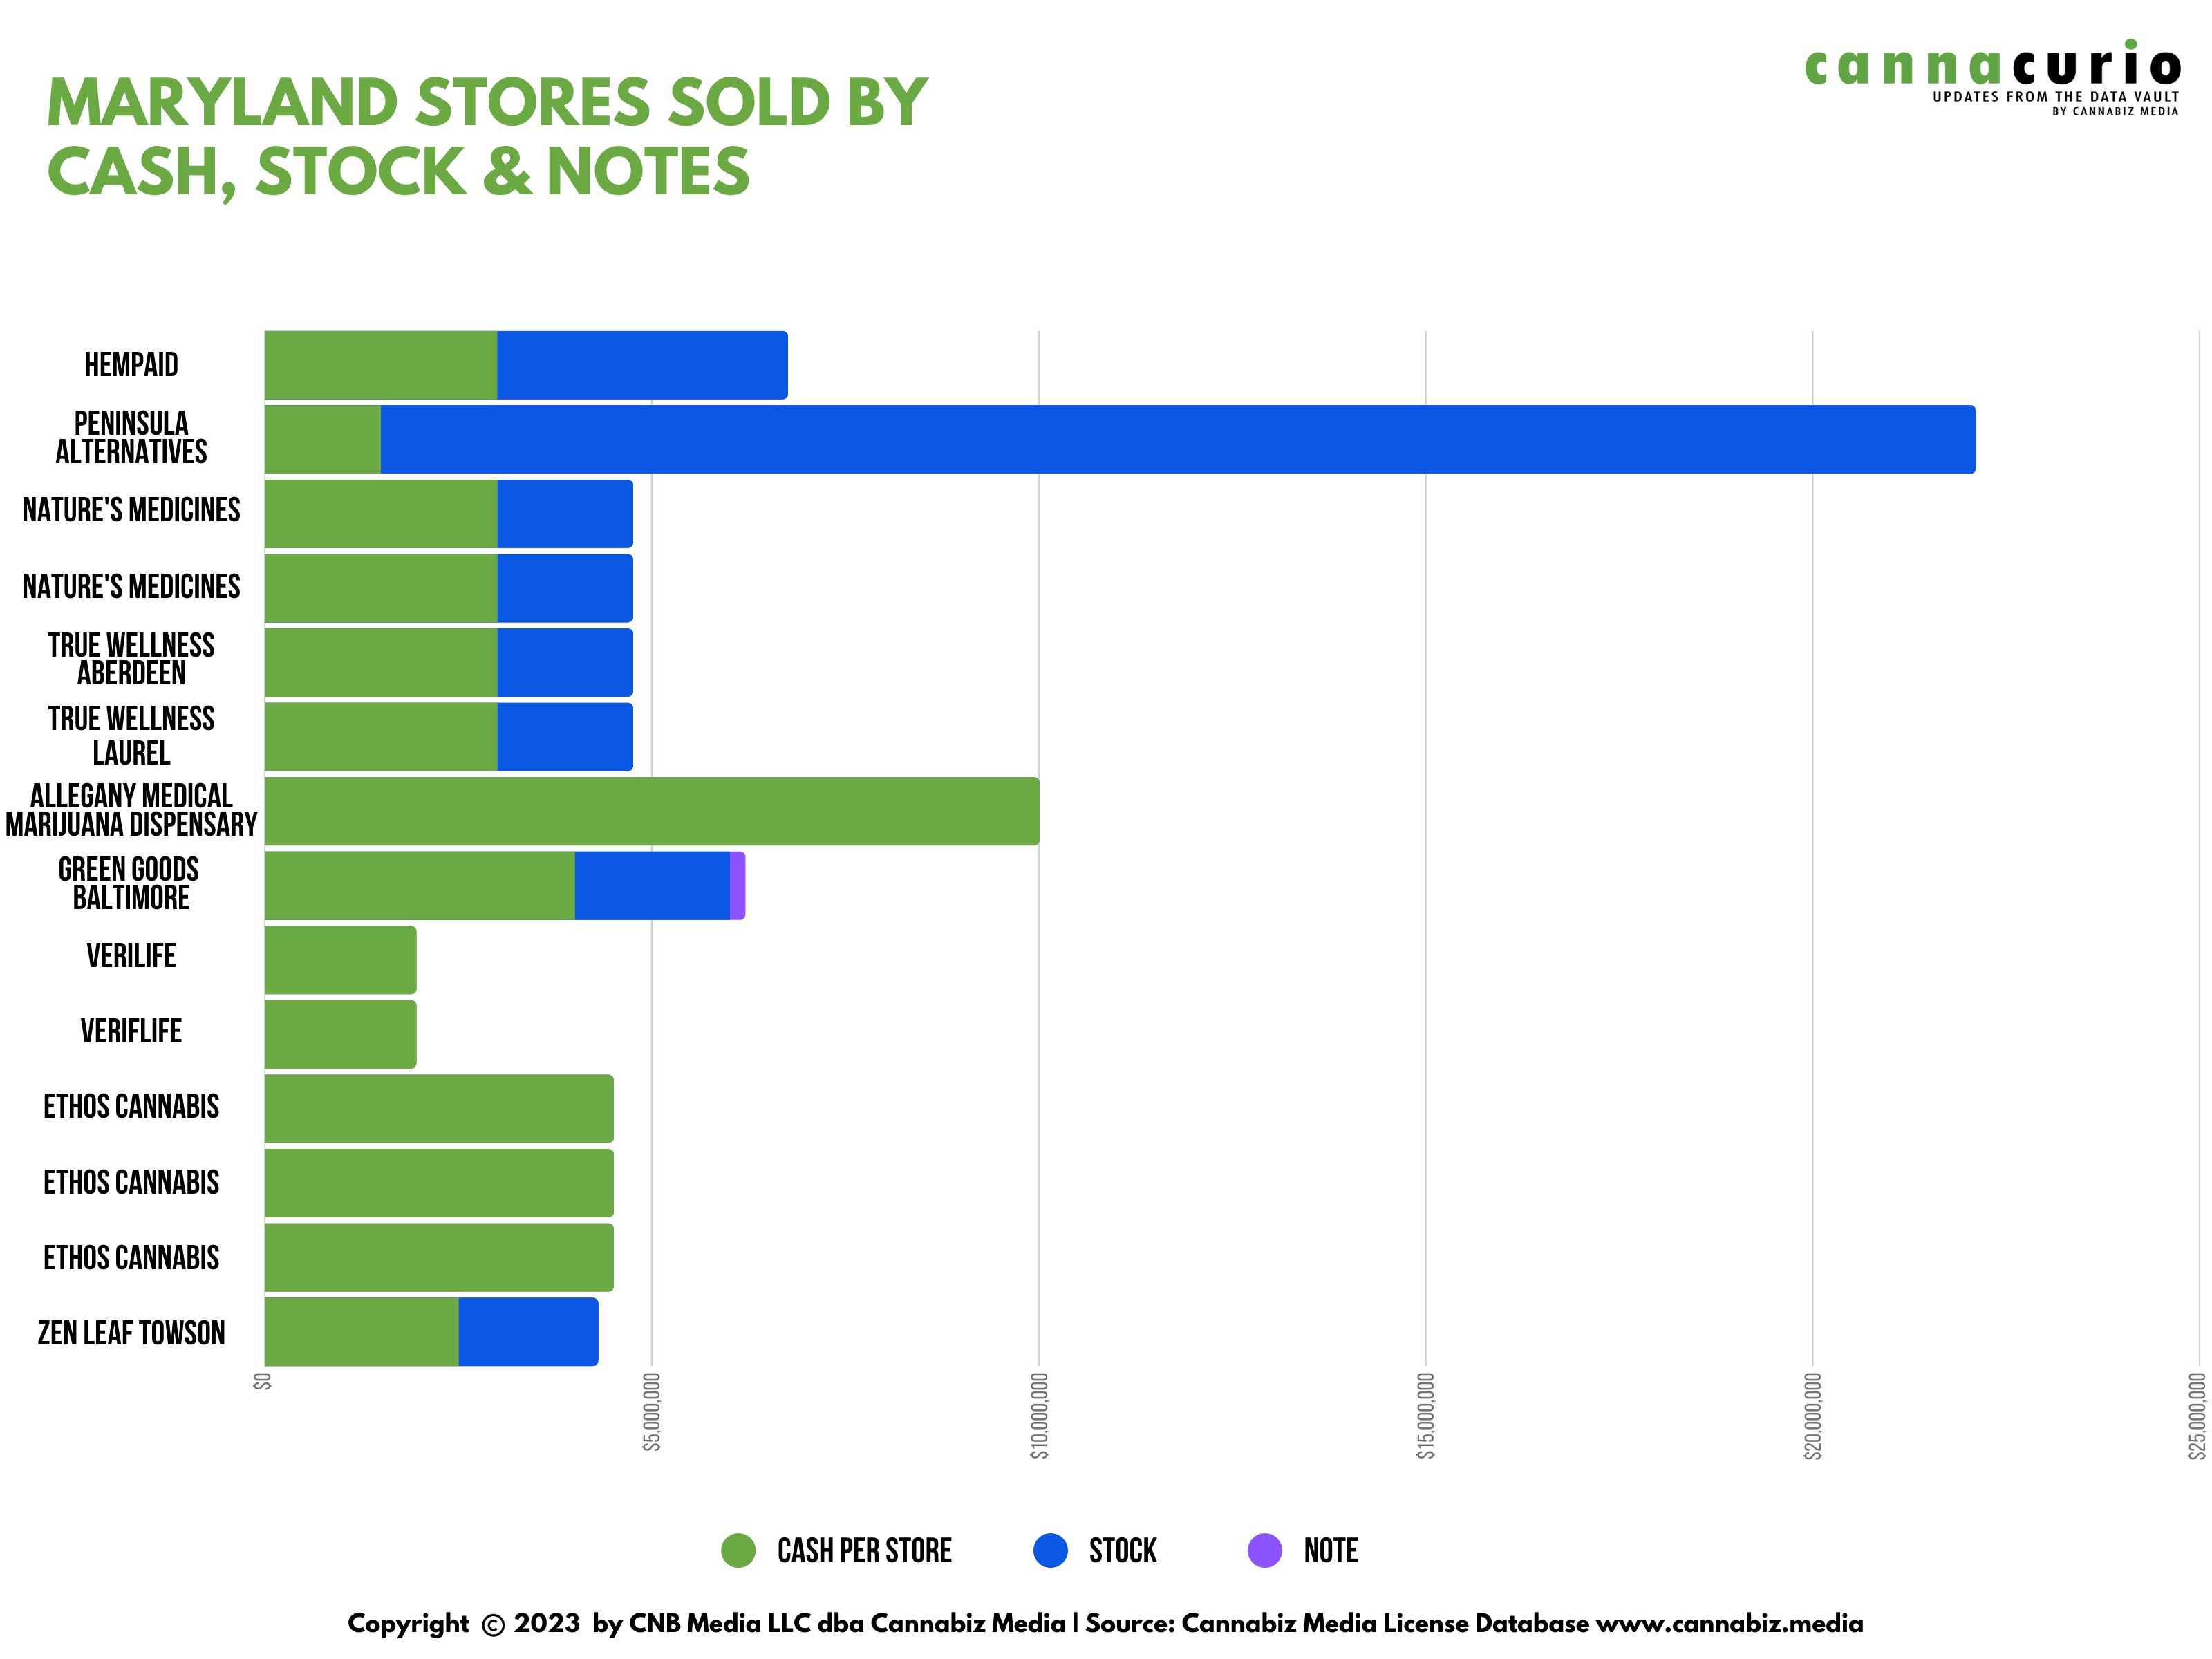 Grafiek van Maryland-winkels verkocht met contant geld, aandelen en bankbiljetten